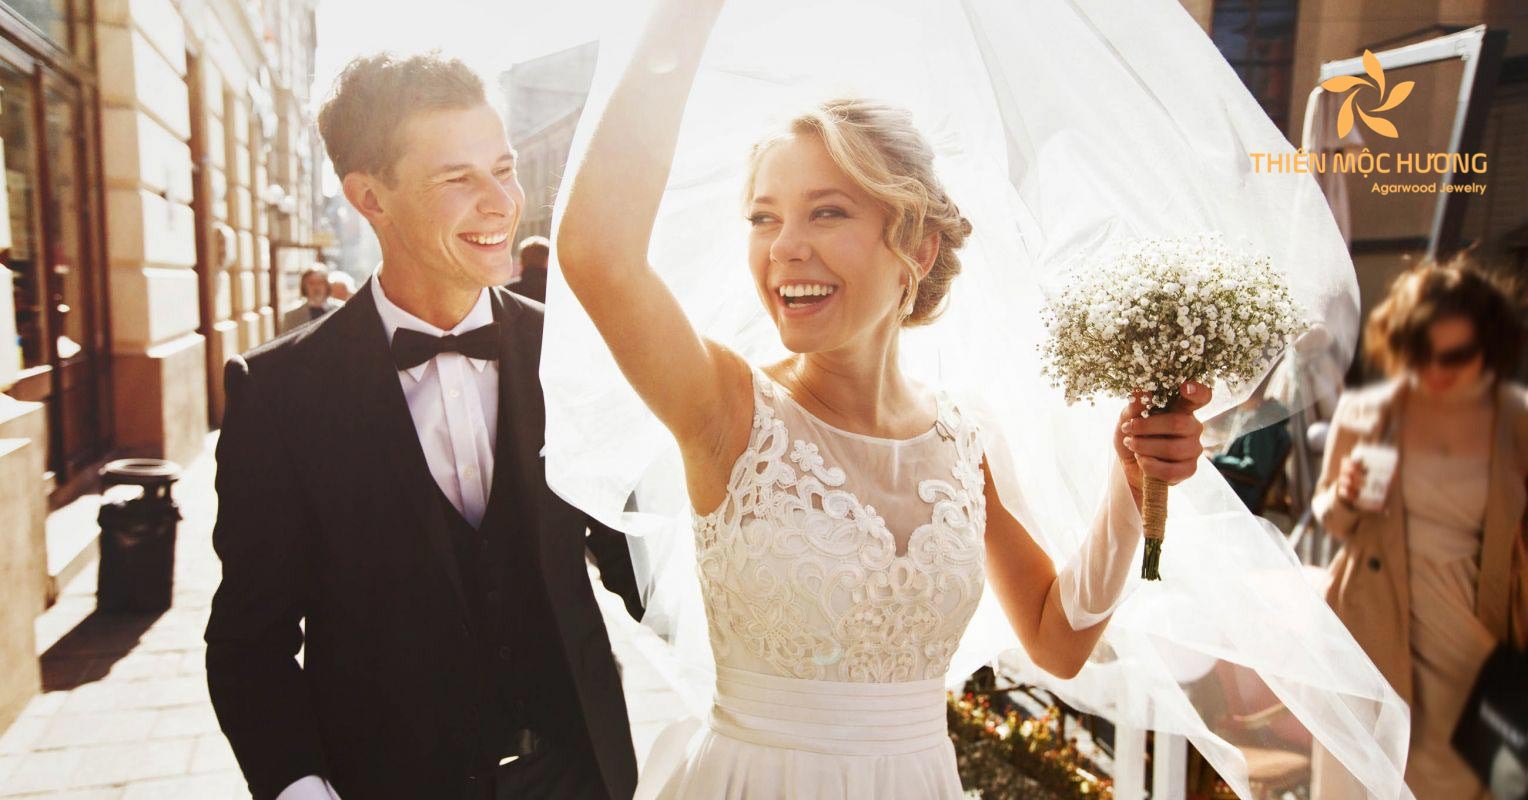 Chọn tuồi kết hôn phù hợp để có cuộc sống hôn nhân viên mãn và hạnh phúc